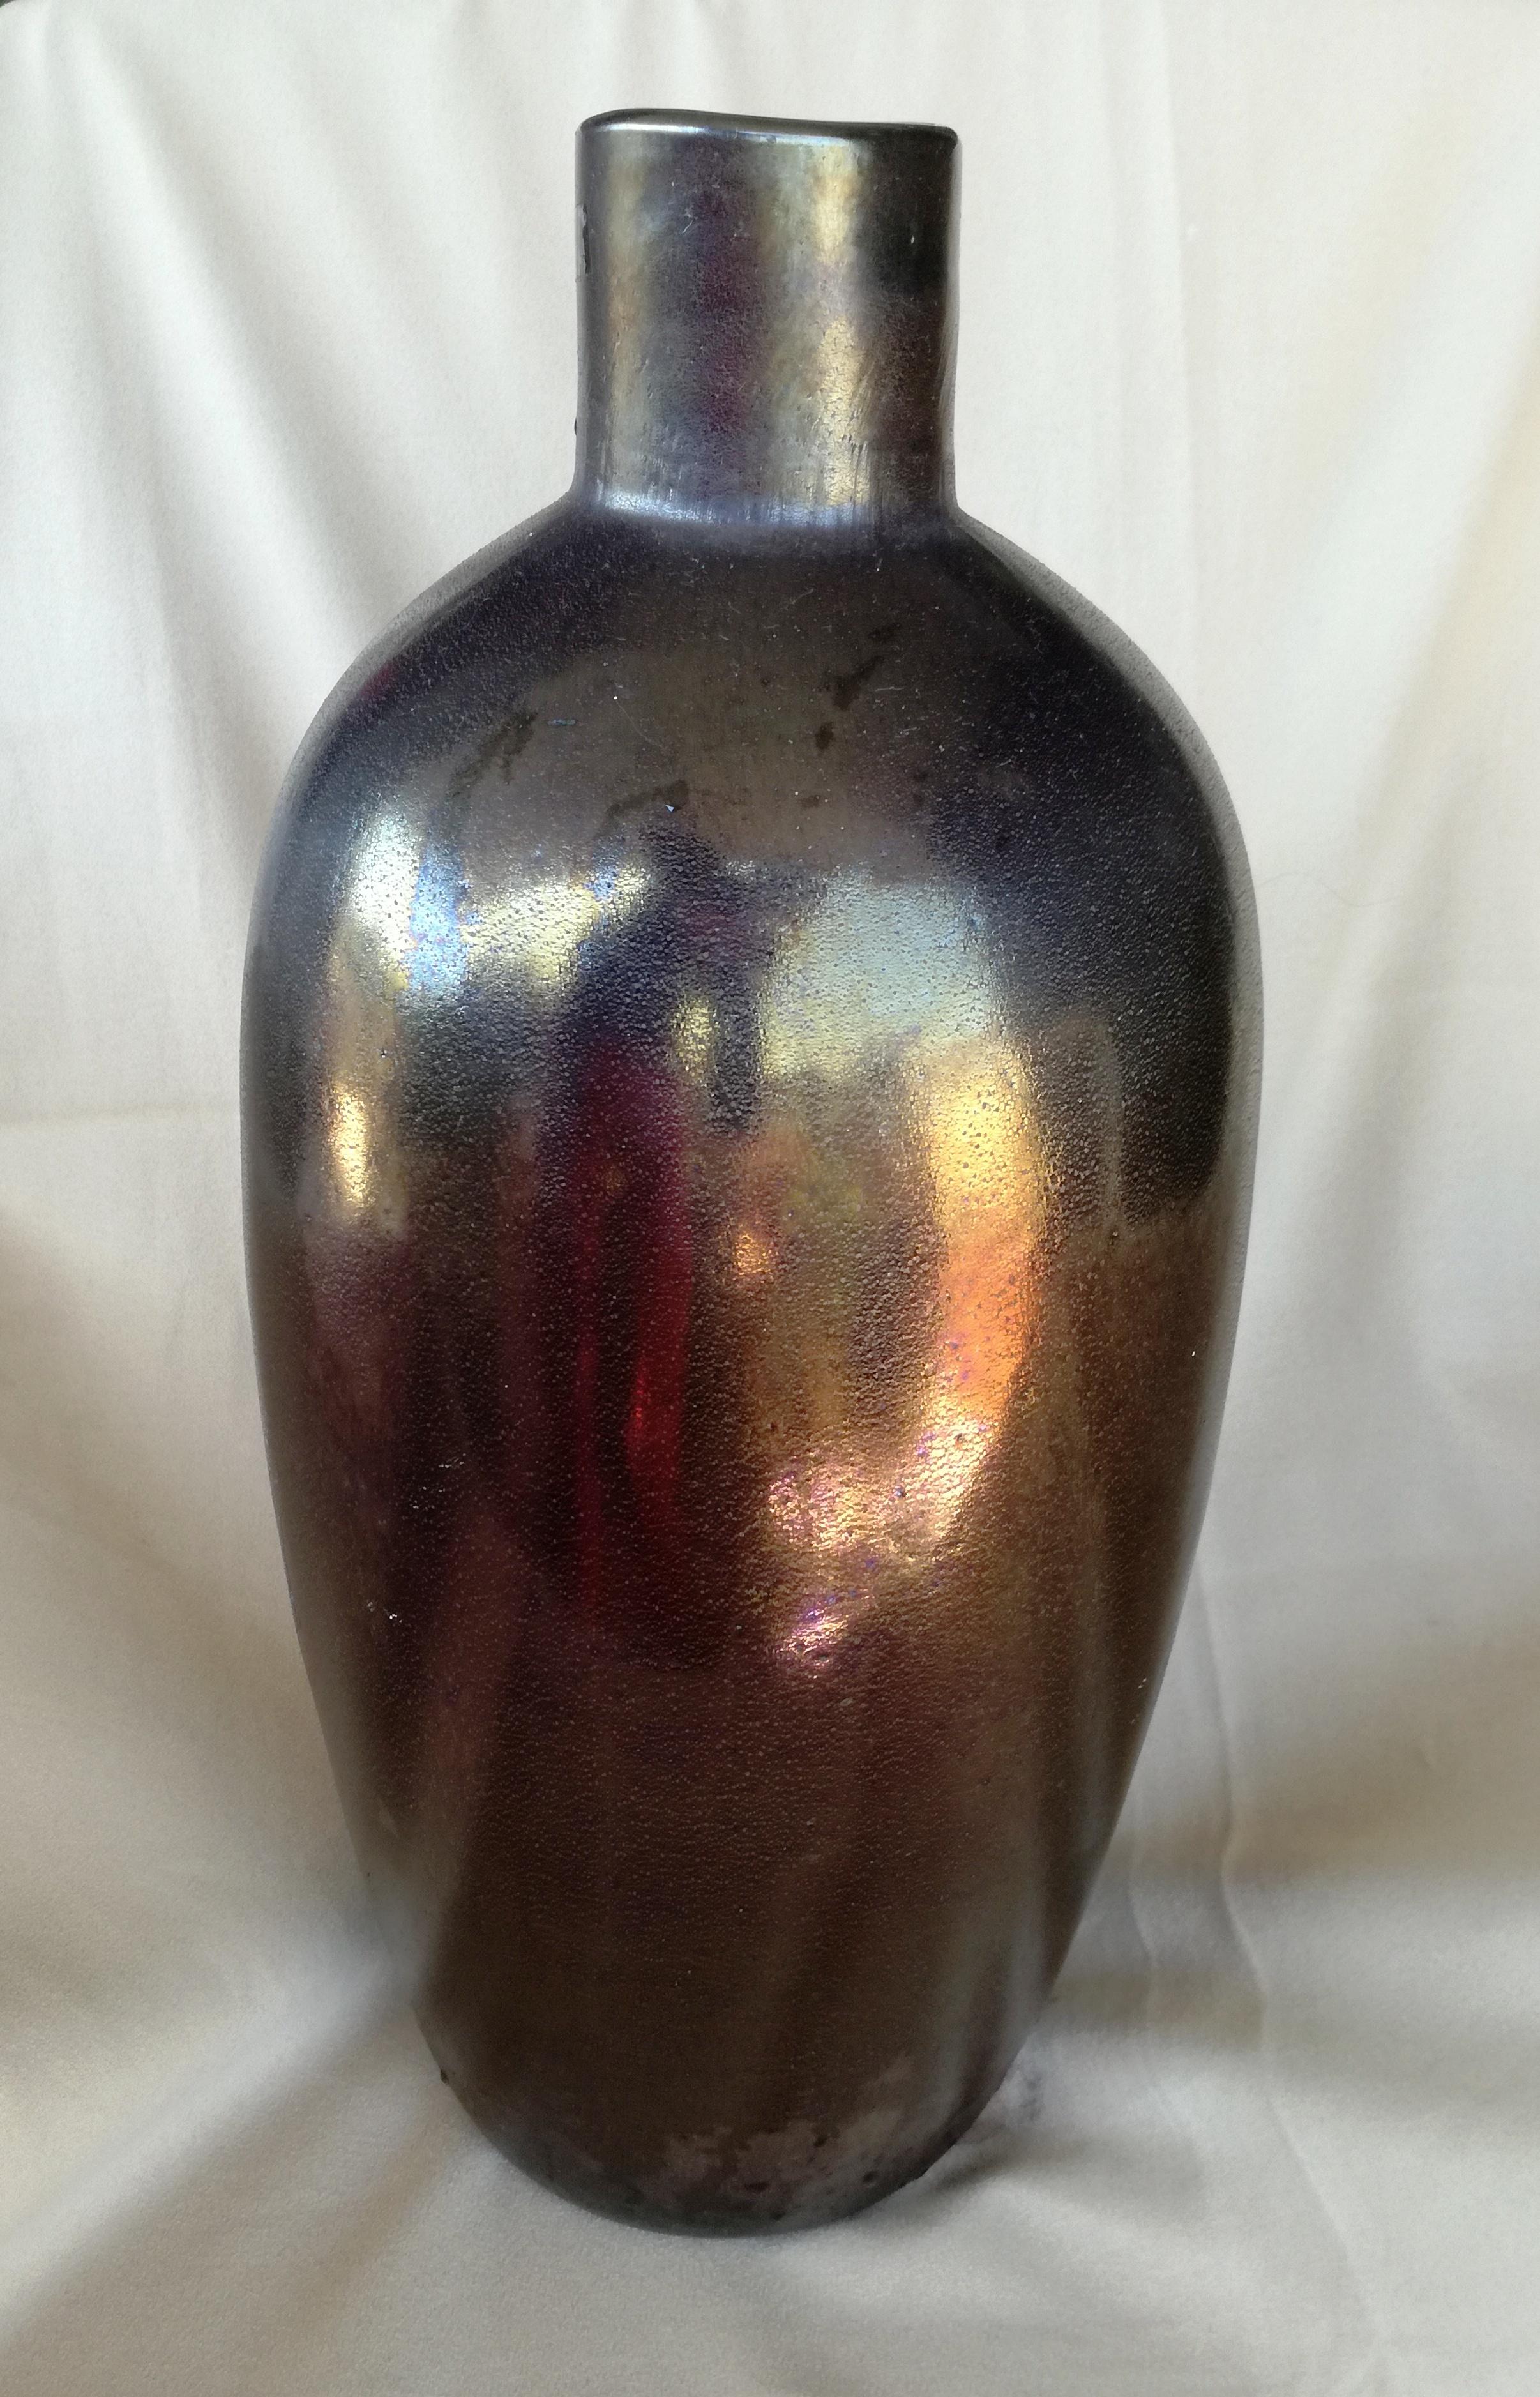 1 flasche aus den 90er jahren, Barbini Murano. große flasche / vase, Muranoglas, silikonbehandelt. die flasche ist aus schwerem massivem glas gefertigt. die silikonbehandlung befindet sich auf der oberfläche. auf dem boden kann man die chromatische